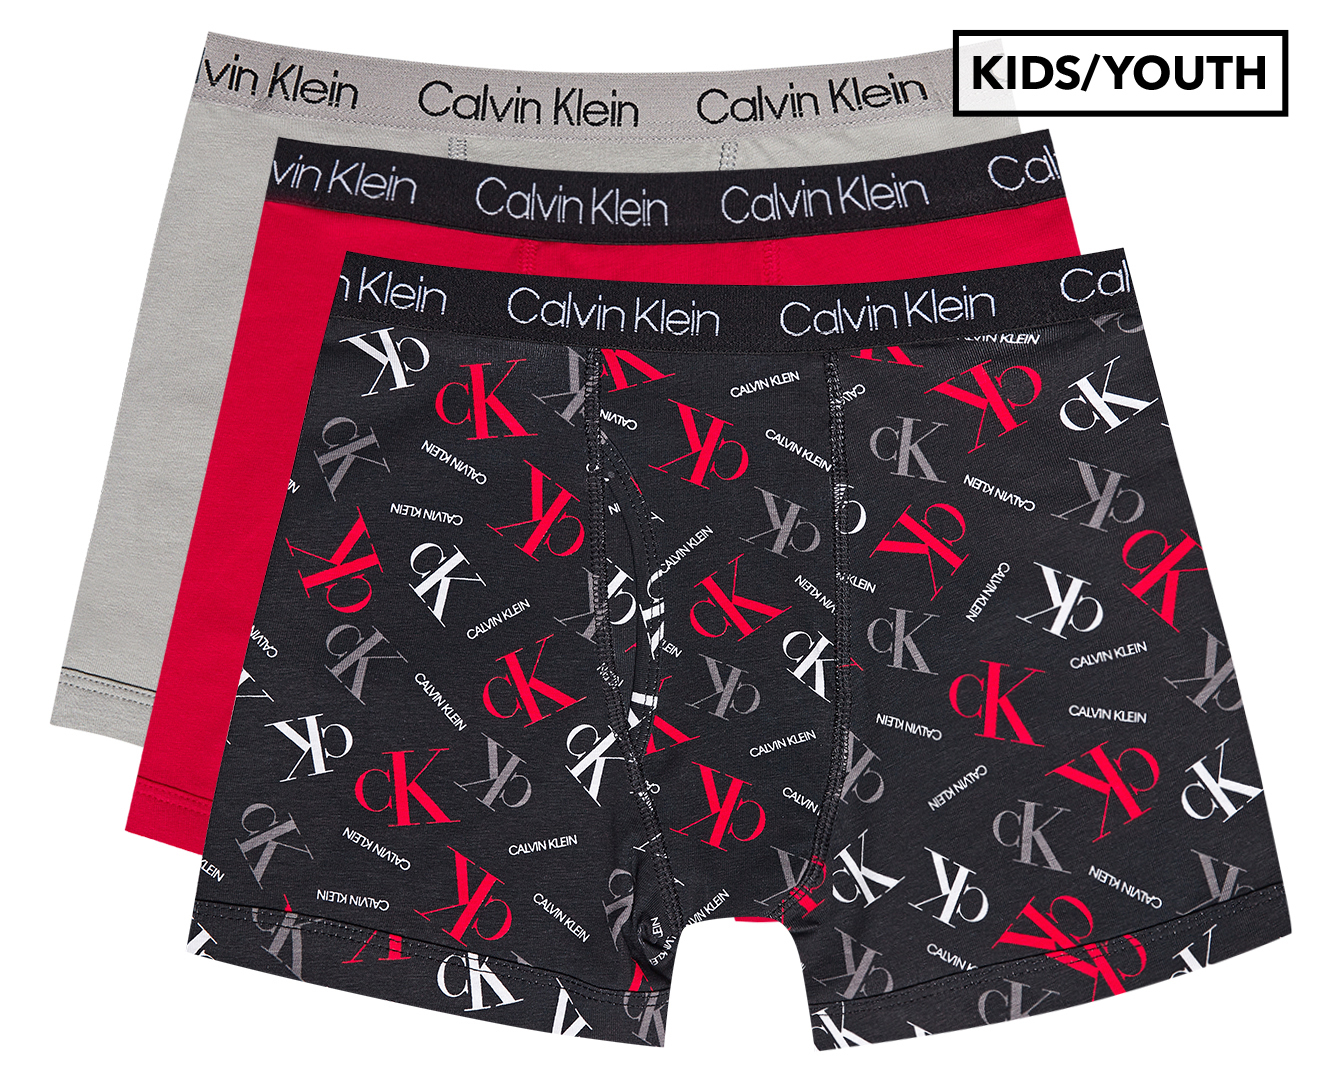 Calvin Klein Boys' Cotton Stretch Boxer Briefs 3-Pack - Black/Grey/Red |  